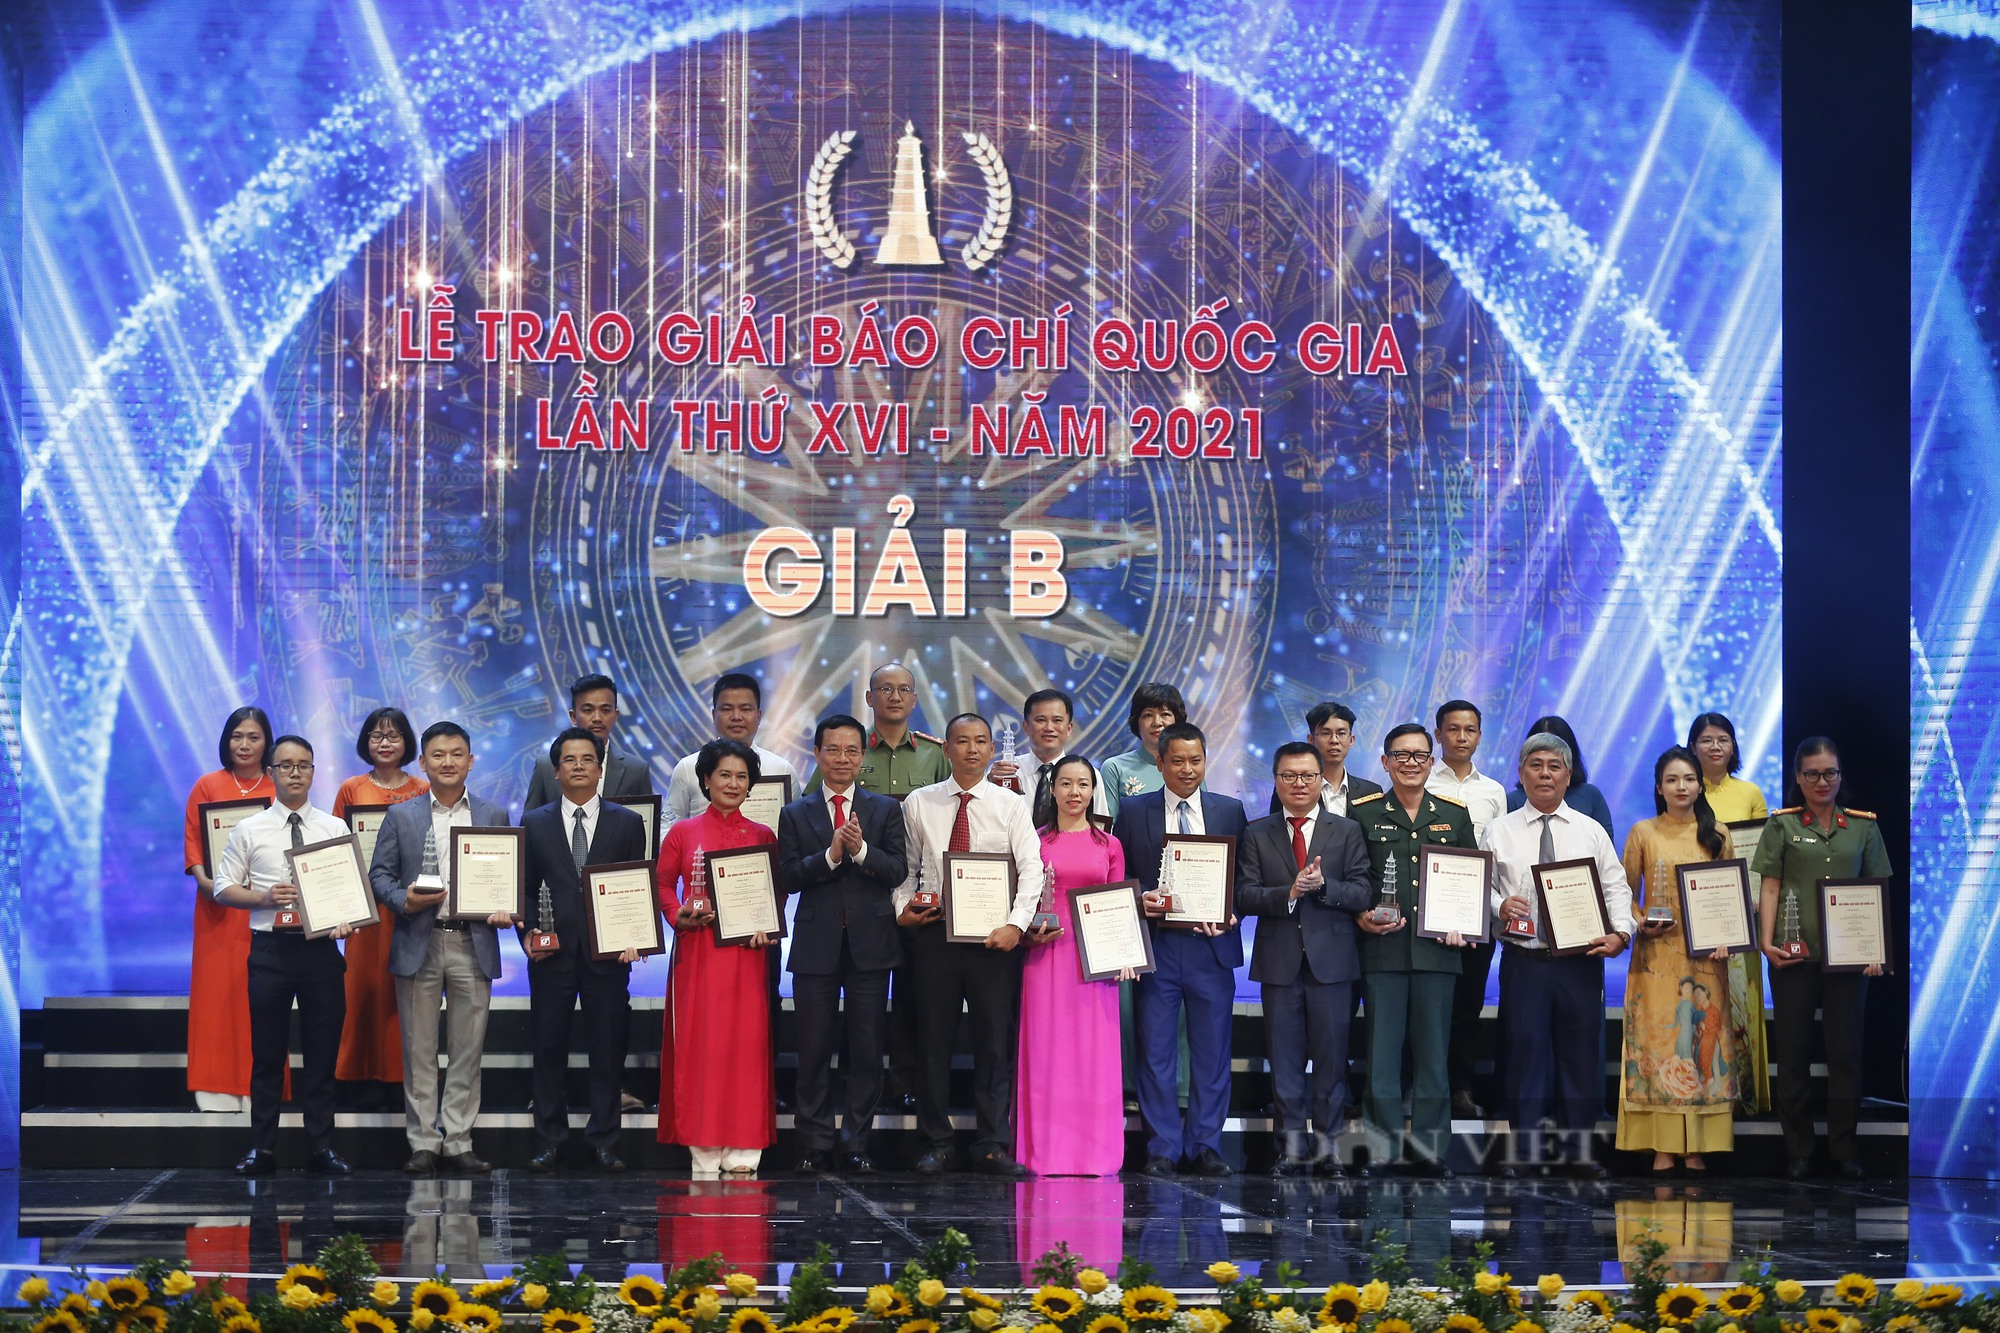 Báo NTNN/Dân Việt đoạt hàng loạt Giải Báo chí Quốc gia lần thứ XVI - năm 2021 - Ảnh 10.